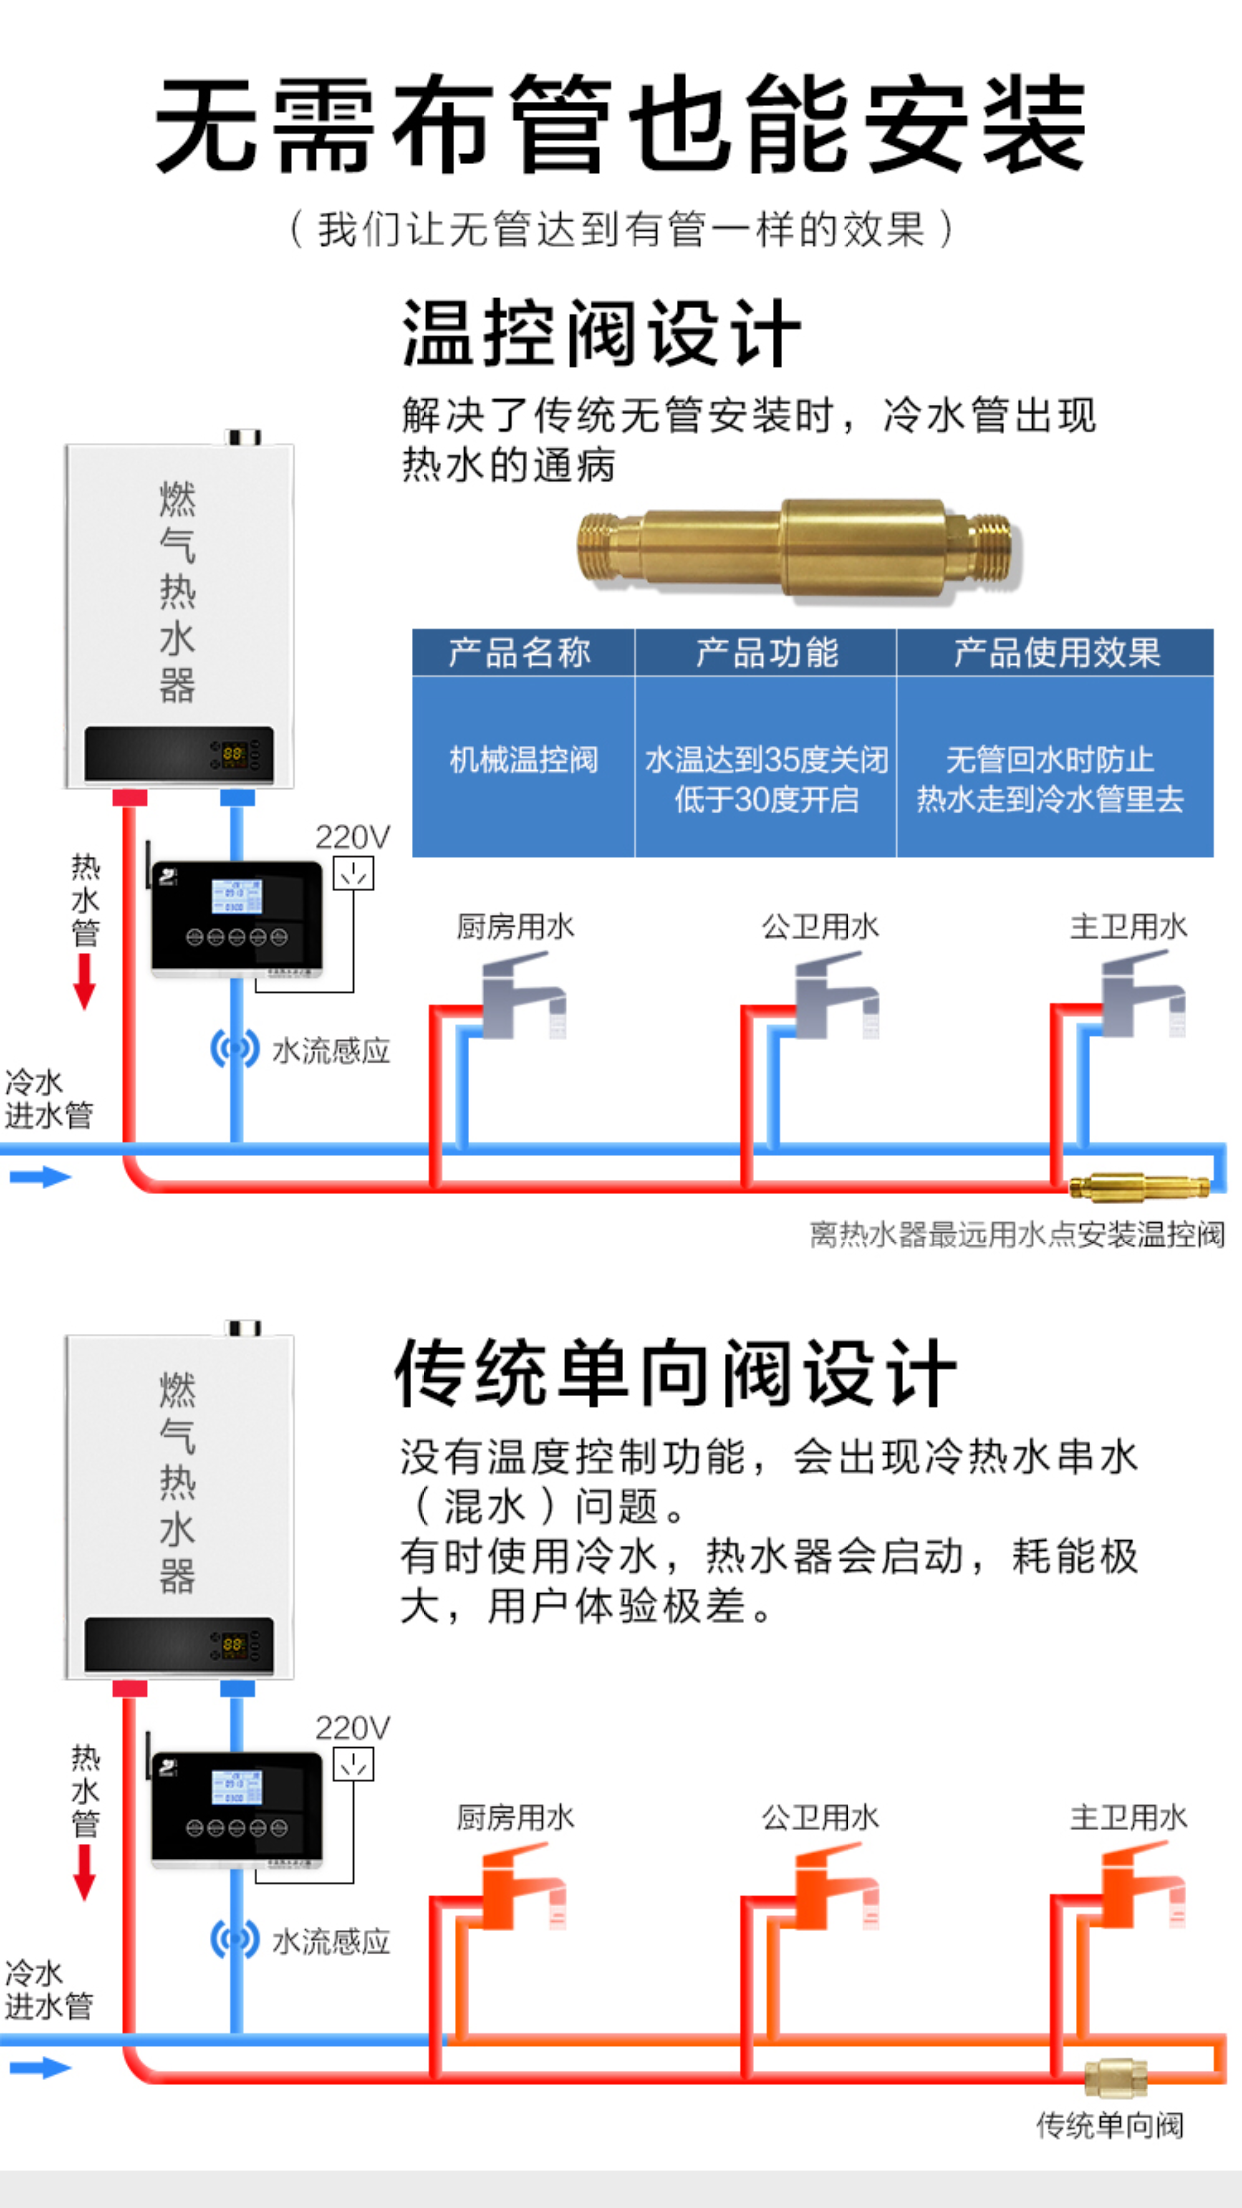 小型回水循环器_回水循环器相关-广东中投电器有限公司